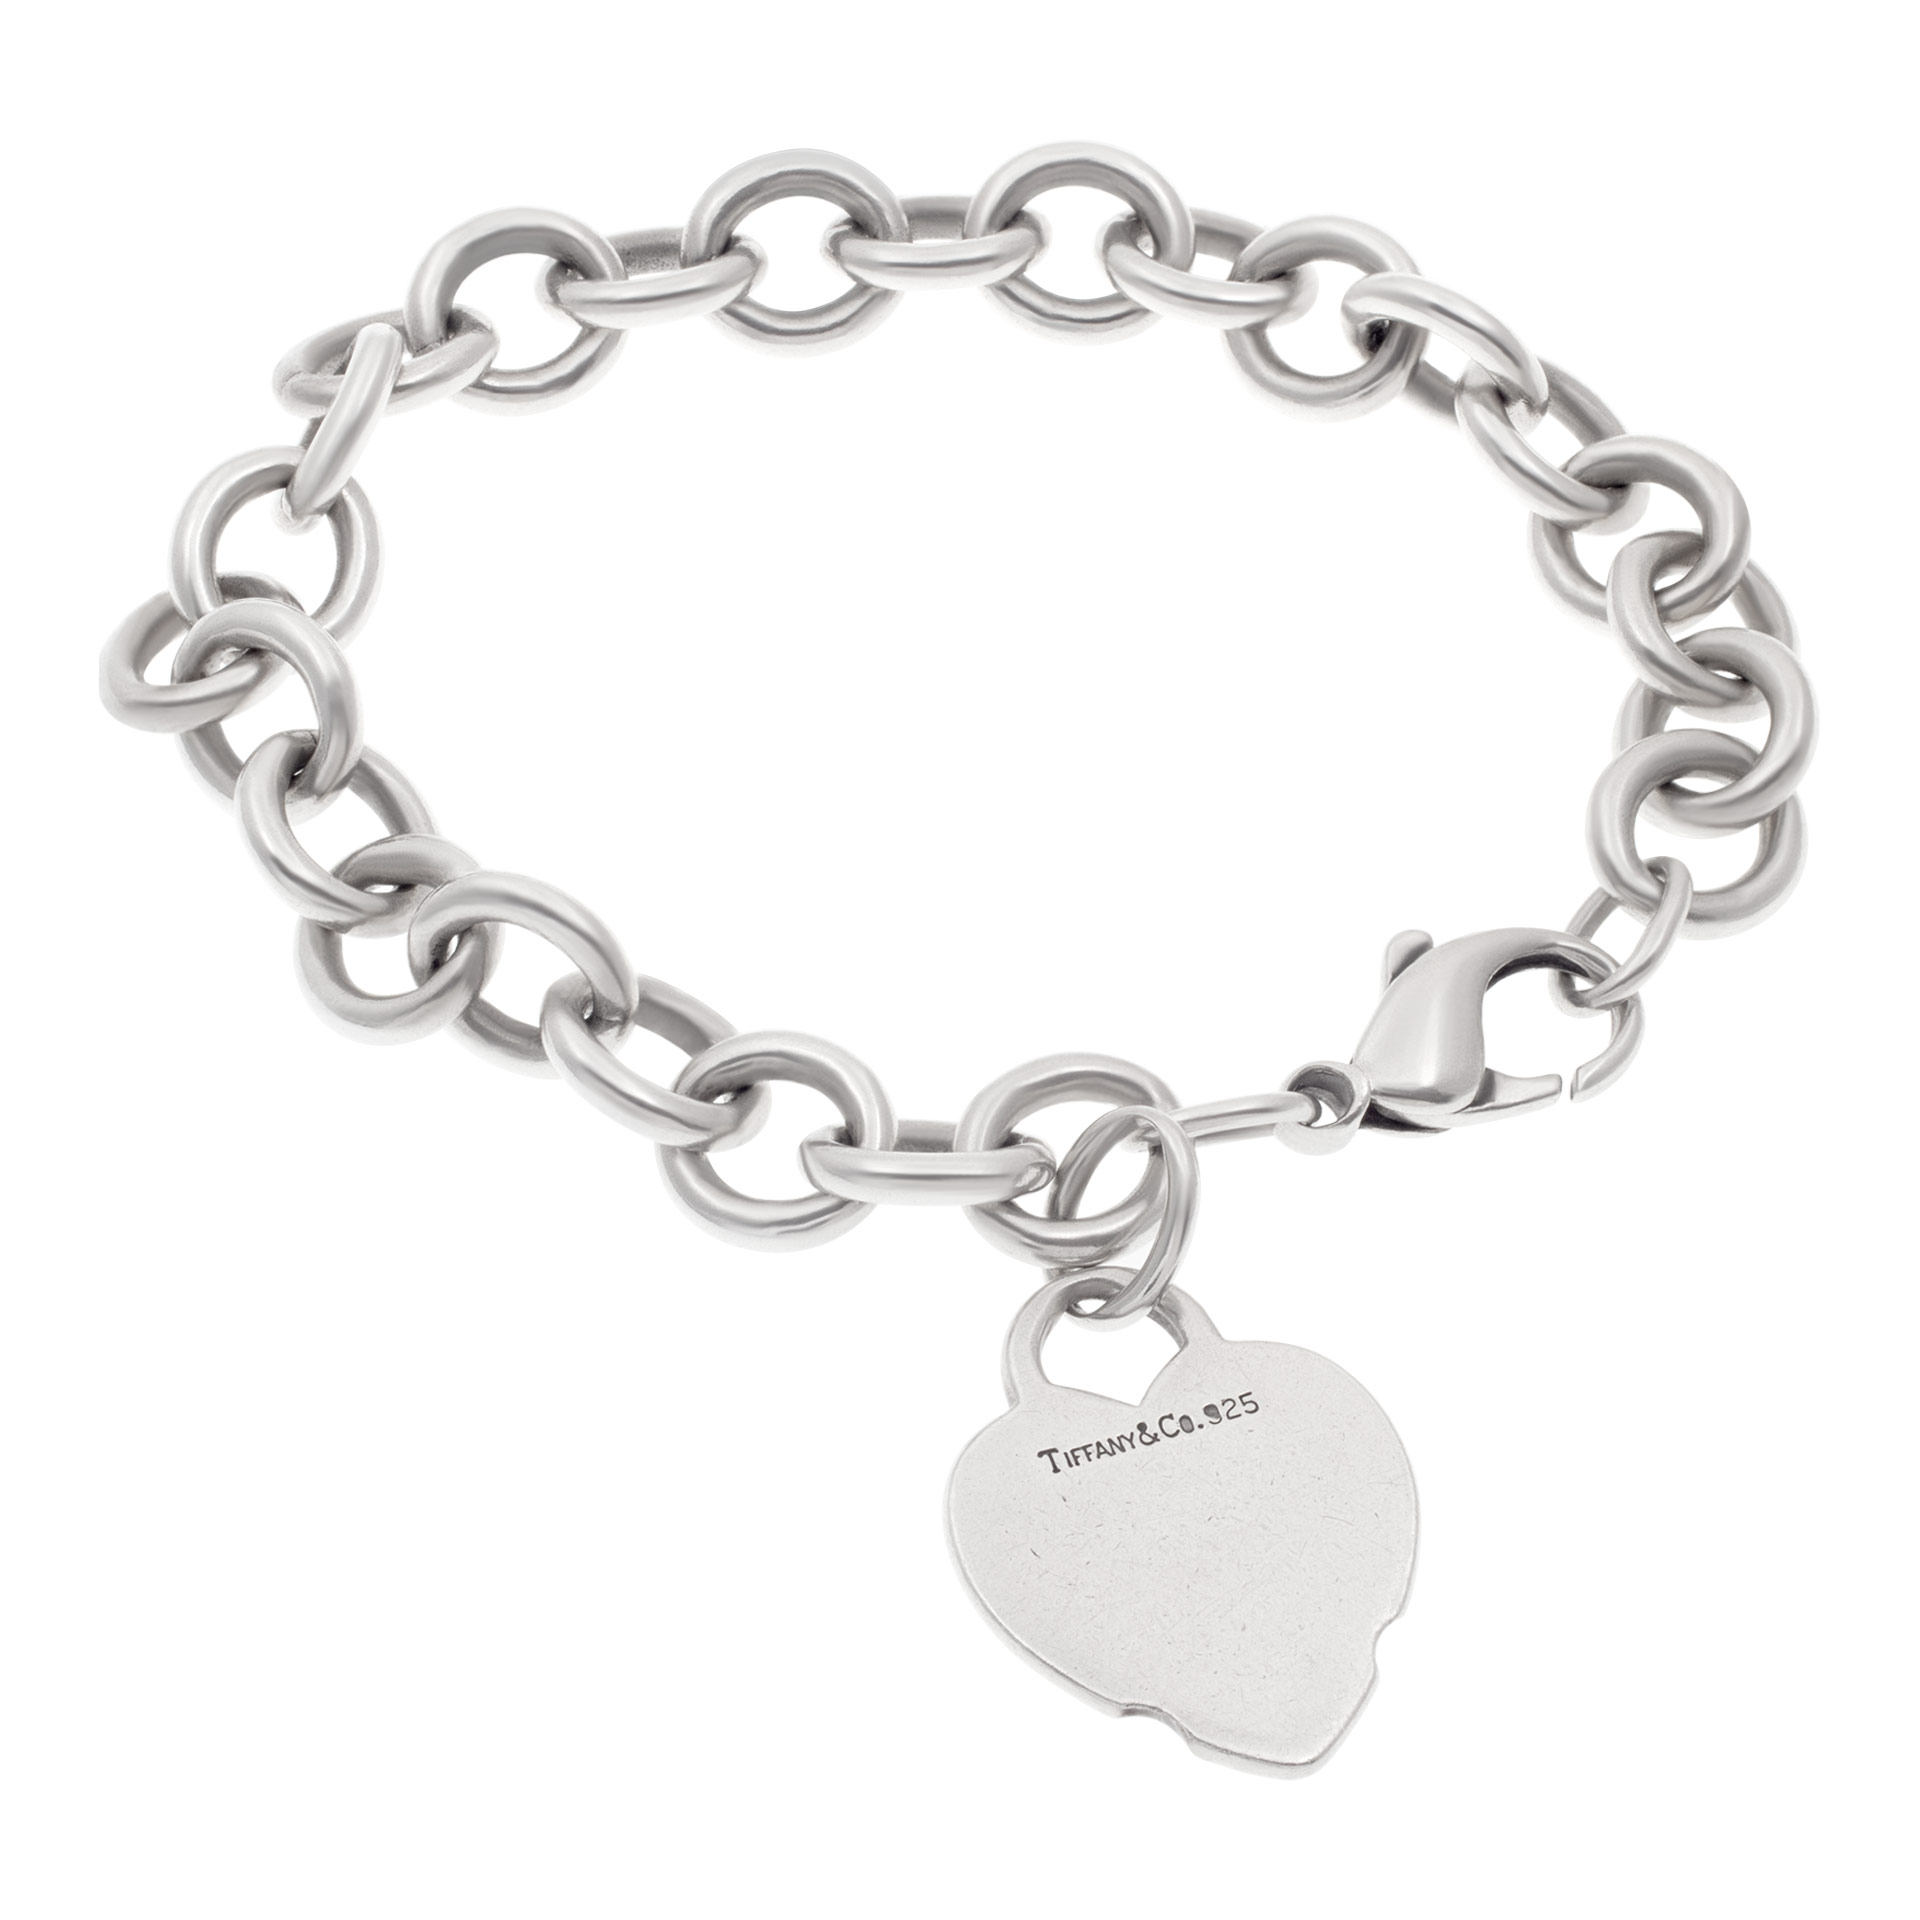 Tiffany & Co heart chain bracelet in sterling silver